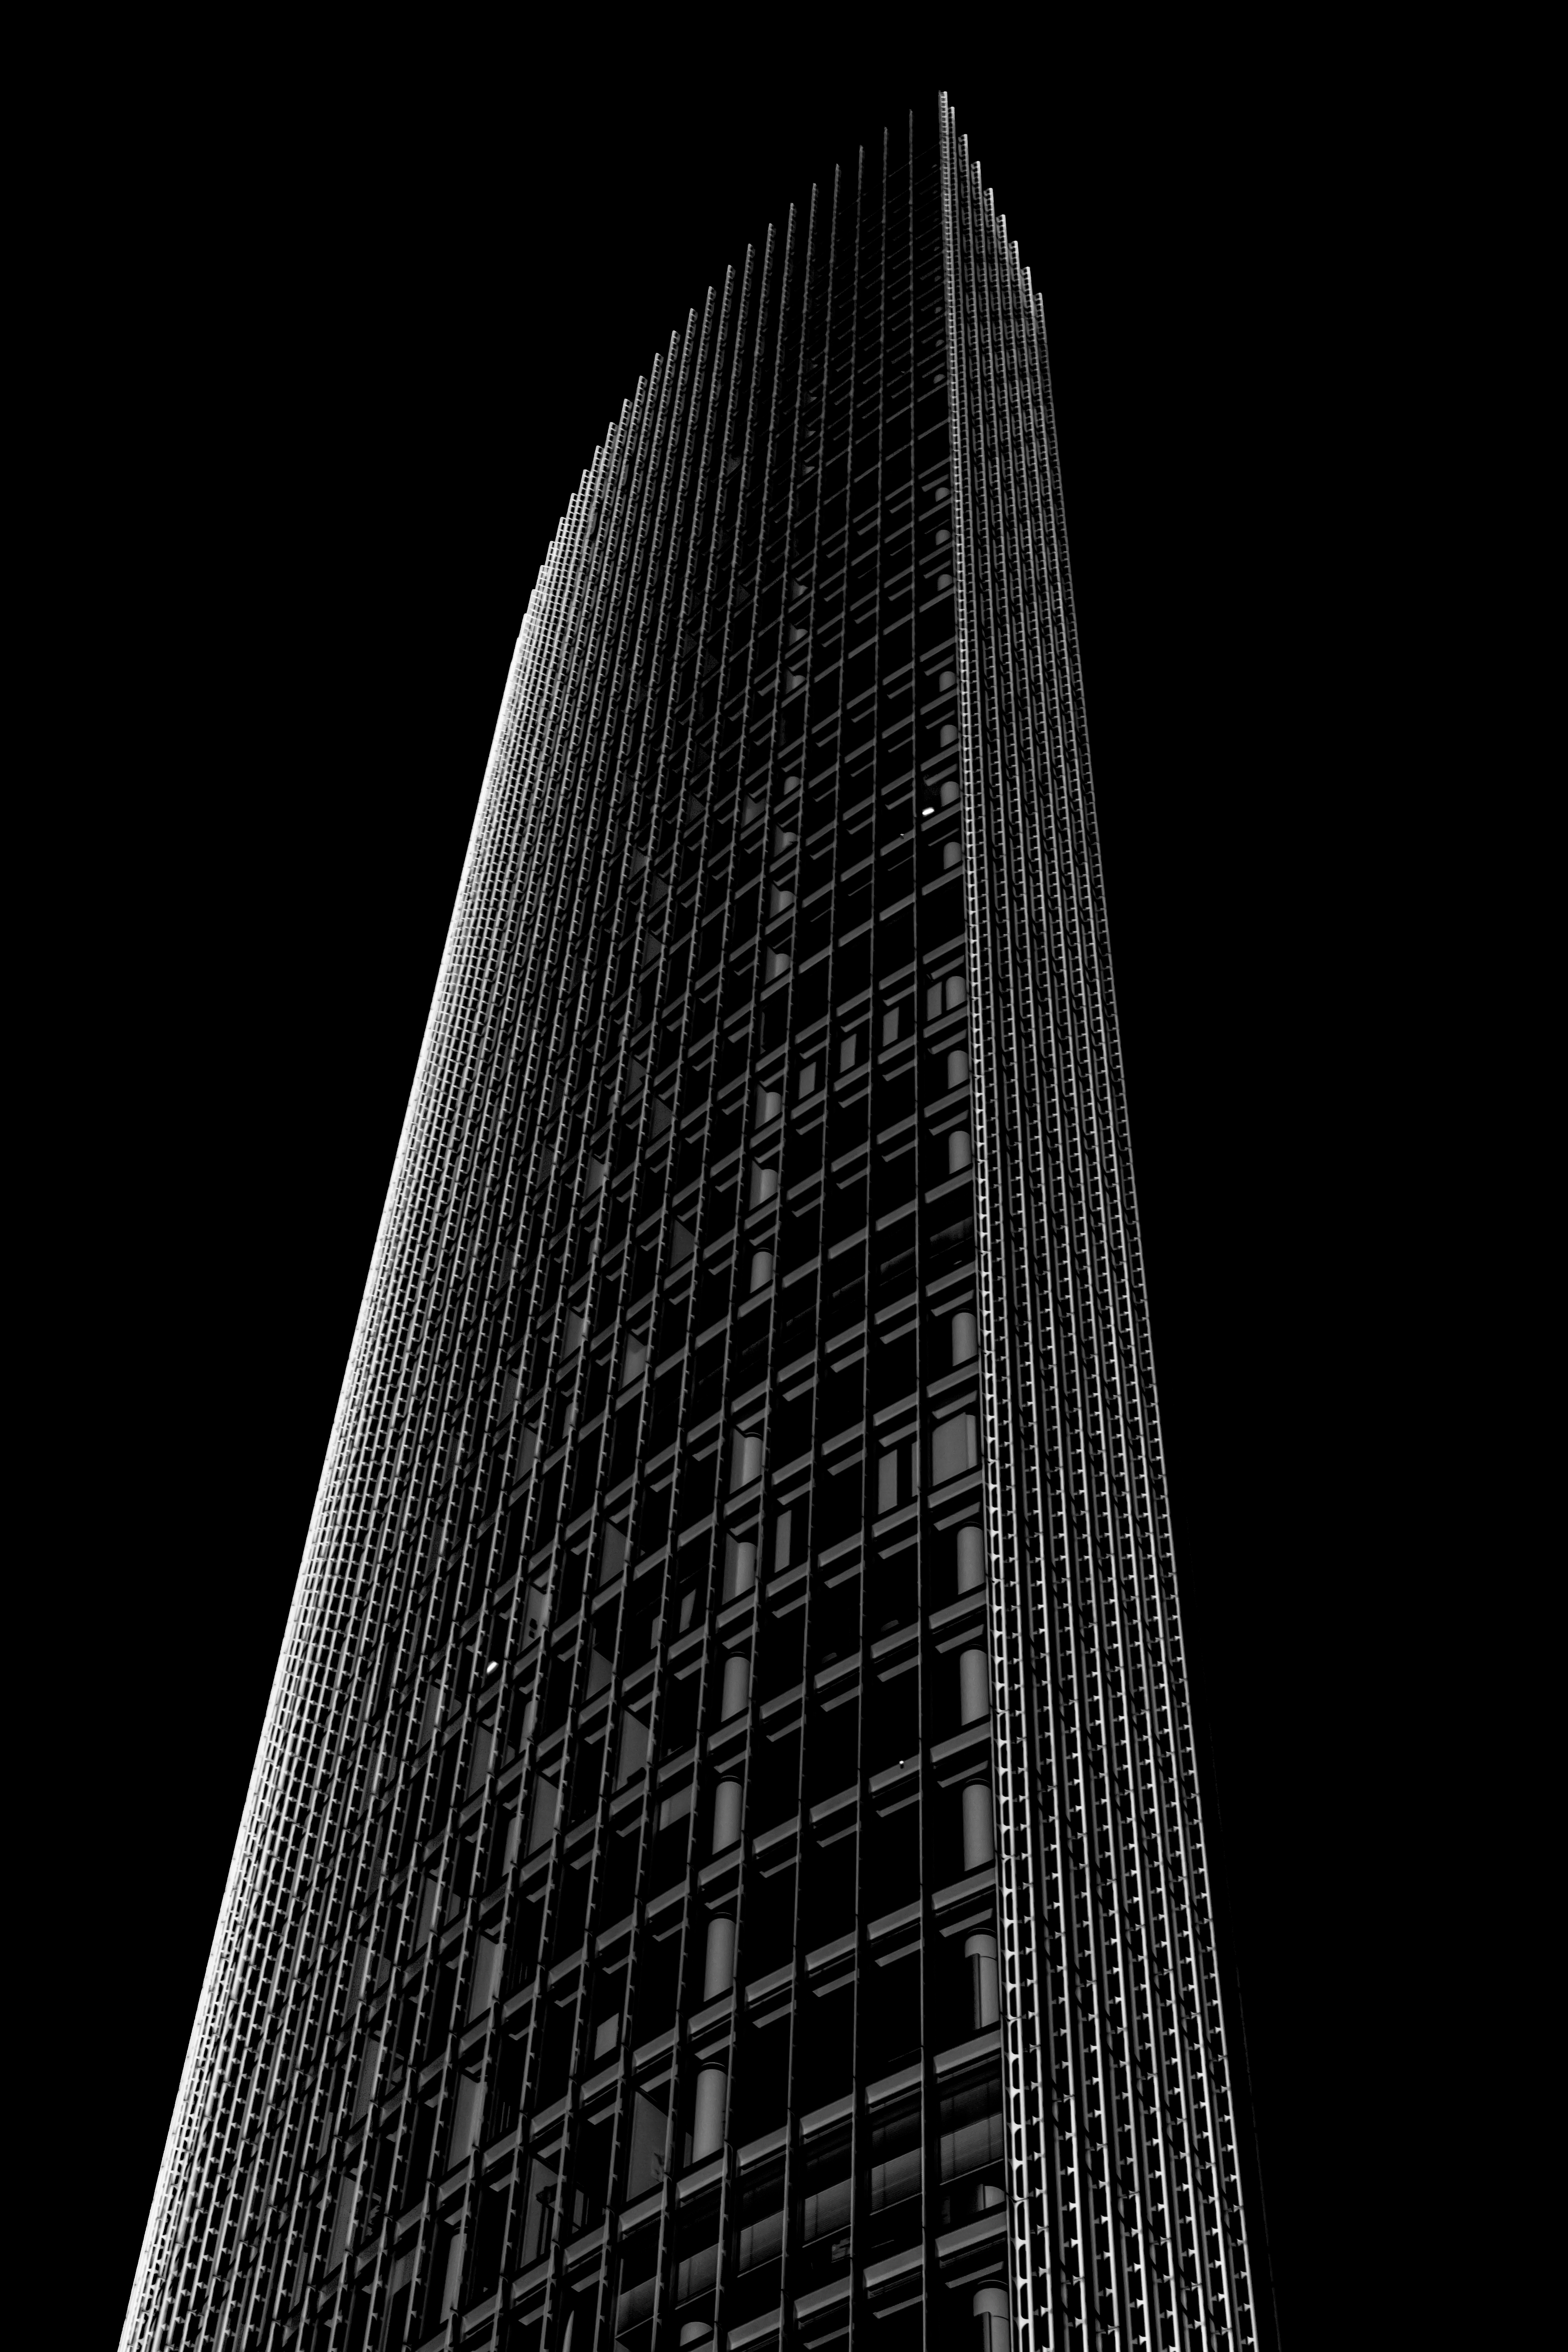 skyscraper, black and white, minimalism, architecture, building, facade